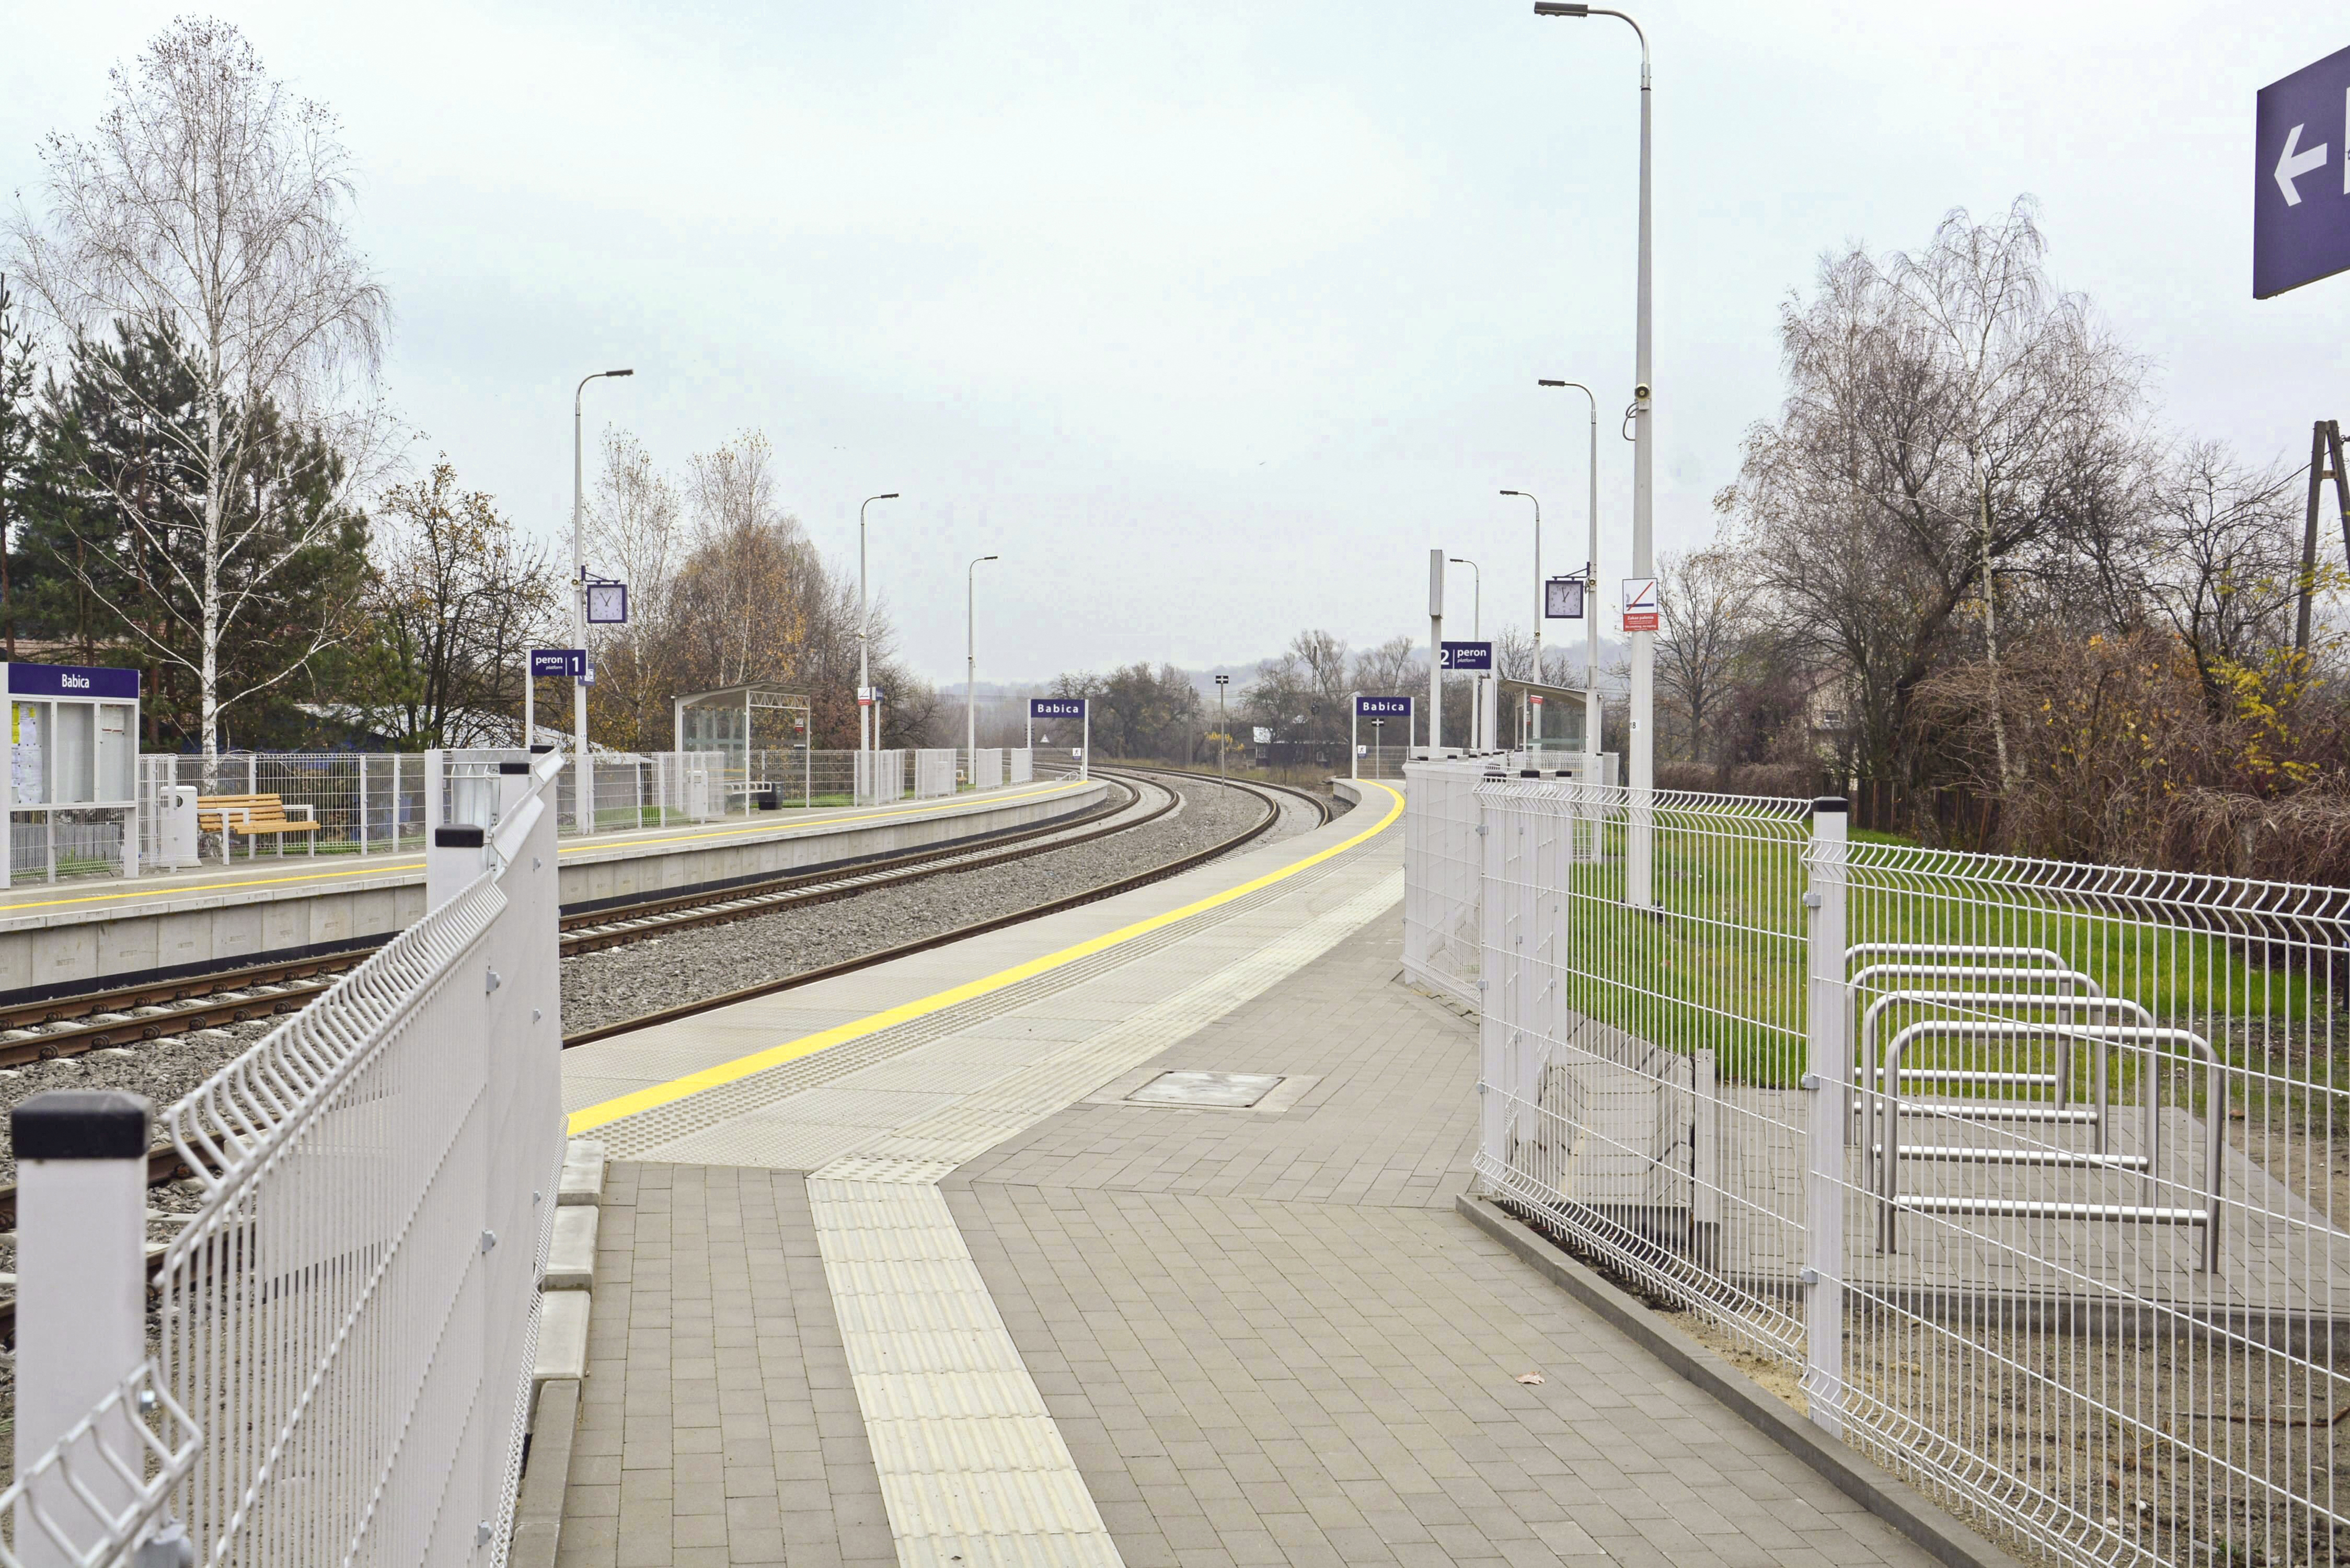 Prace budowlane na torze kolejowym, Stacja kolejowa, Babica - Bahnbau